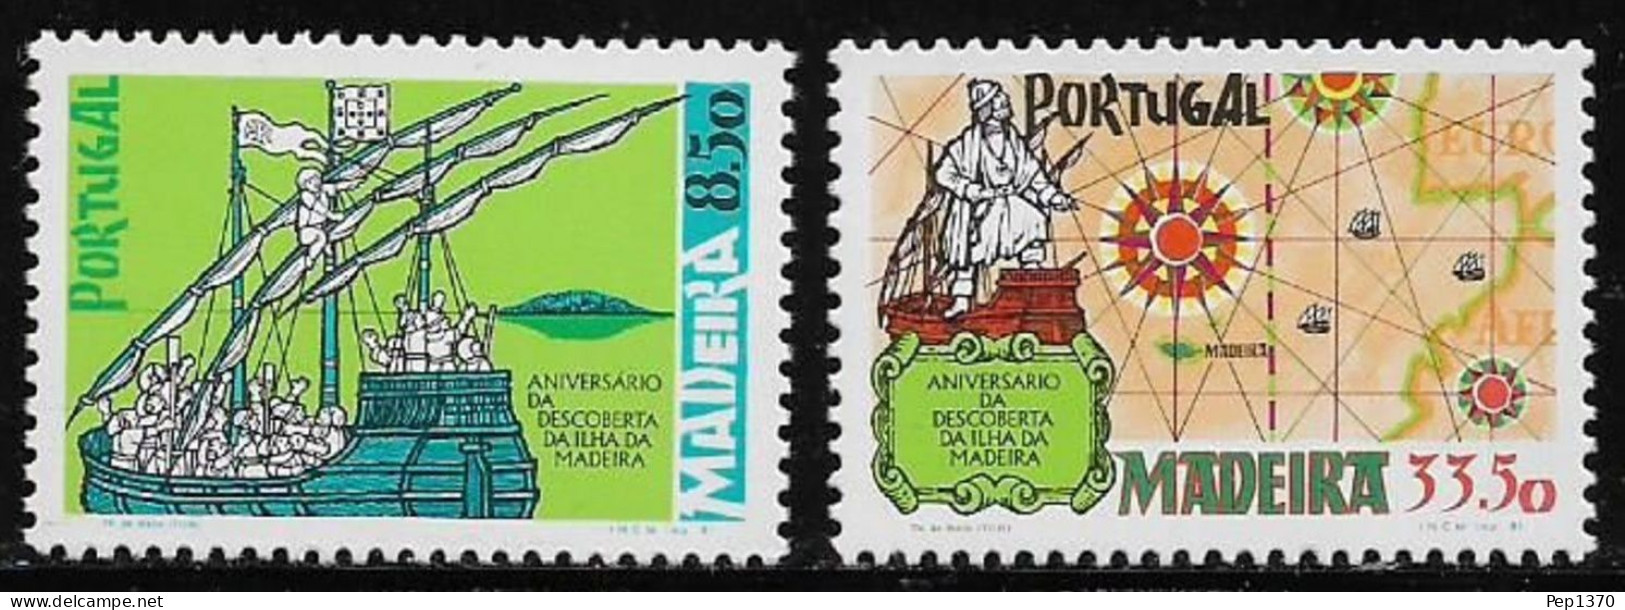 MADEIRA 1981 - ANIVERSARIO DEL DESCUBRIMIENTO DE LA ISLA DE MADEIRA - YVERT 76/77** - Madeira